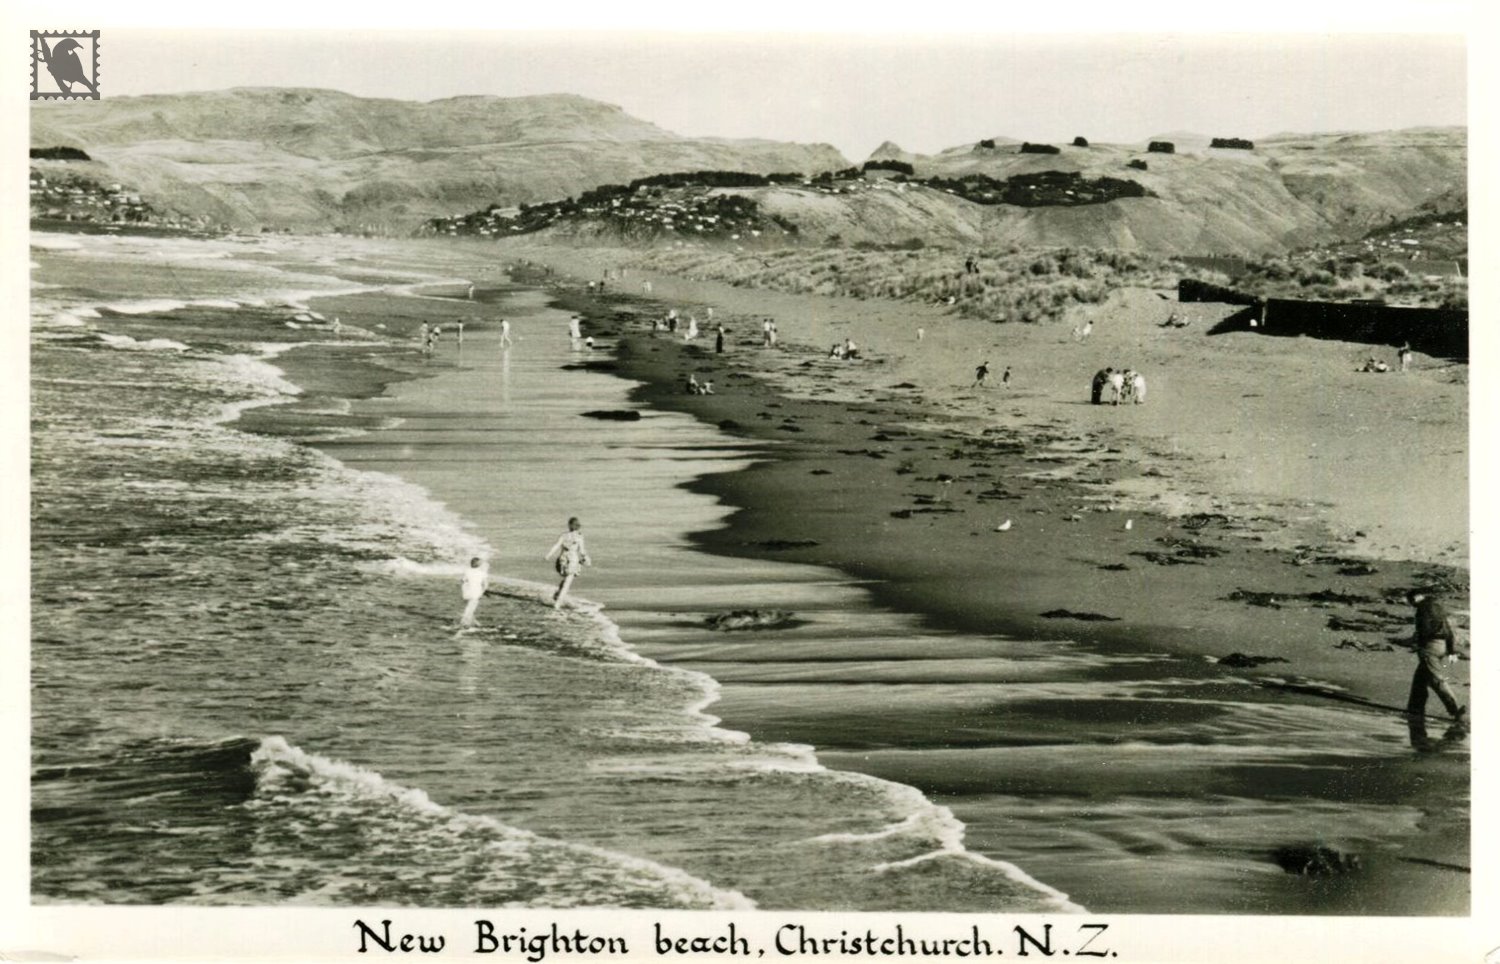 Christchurch New Brighton Beach